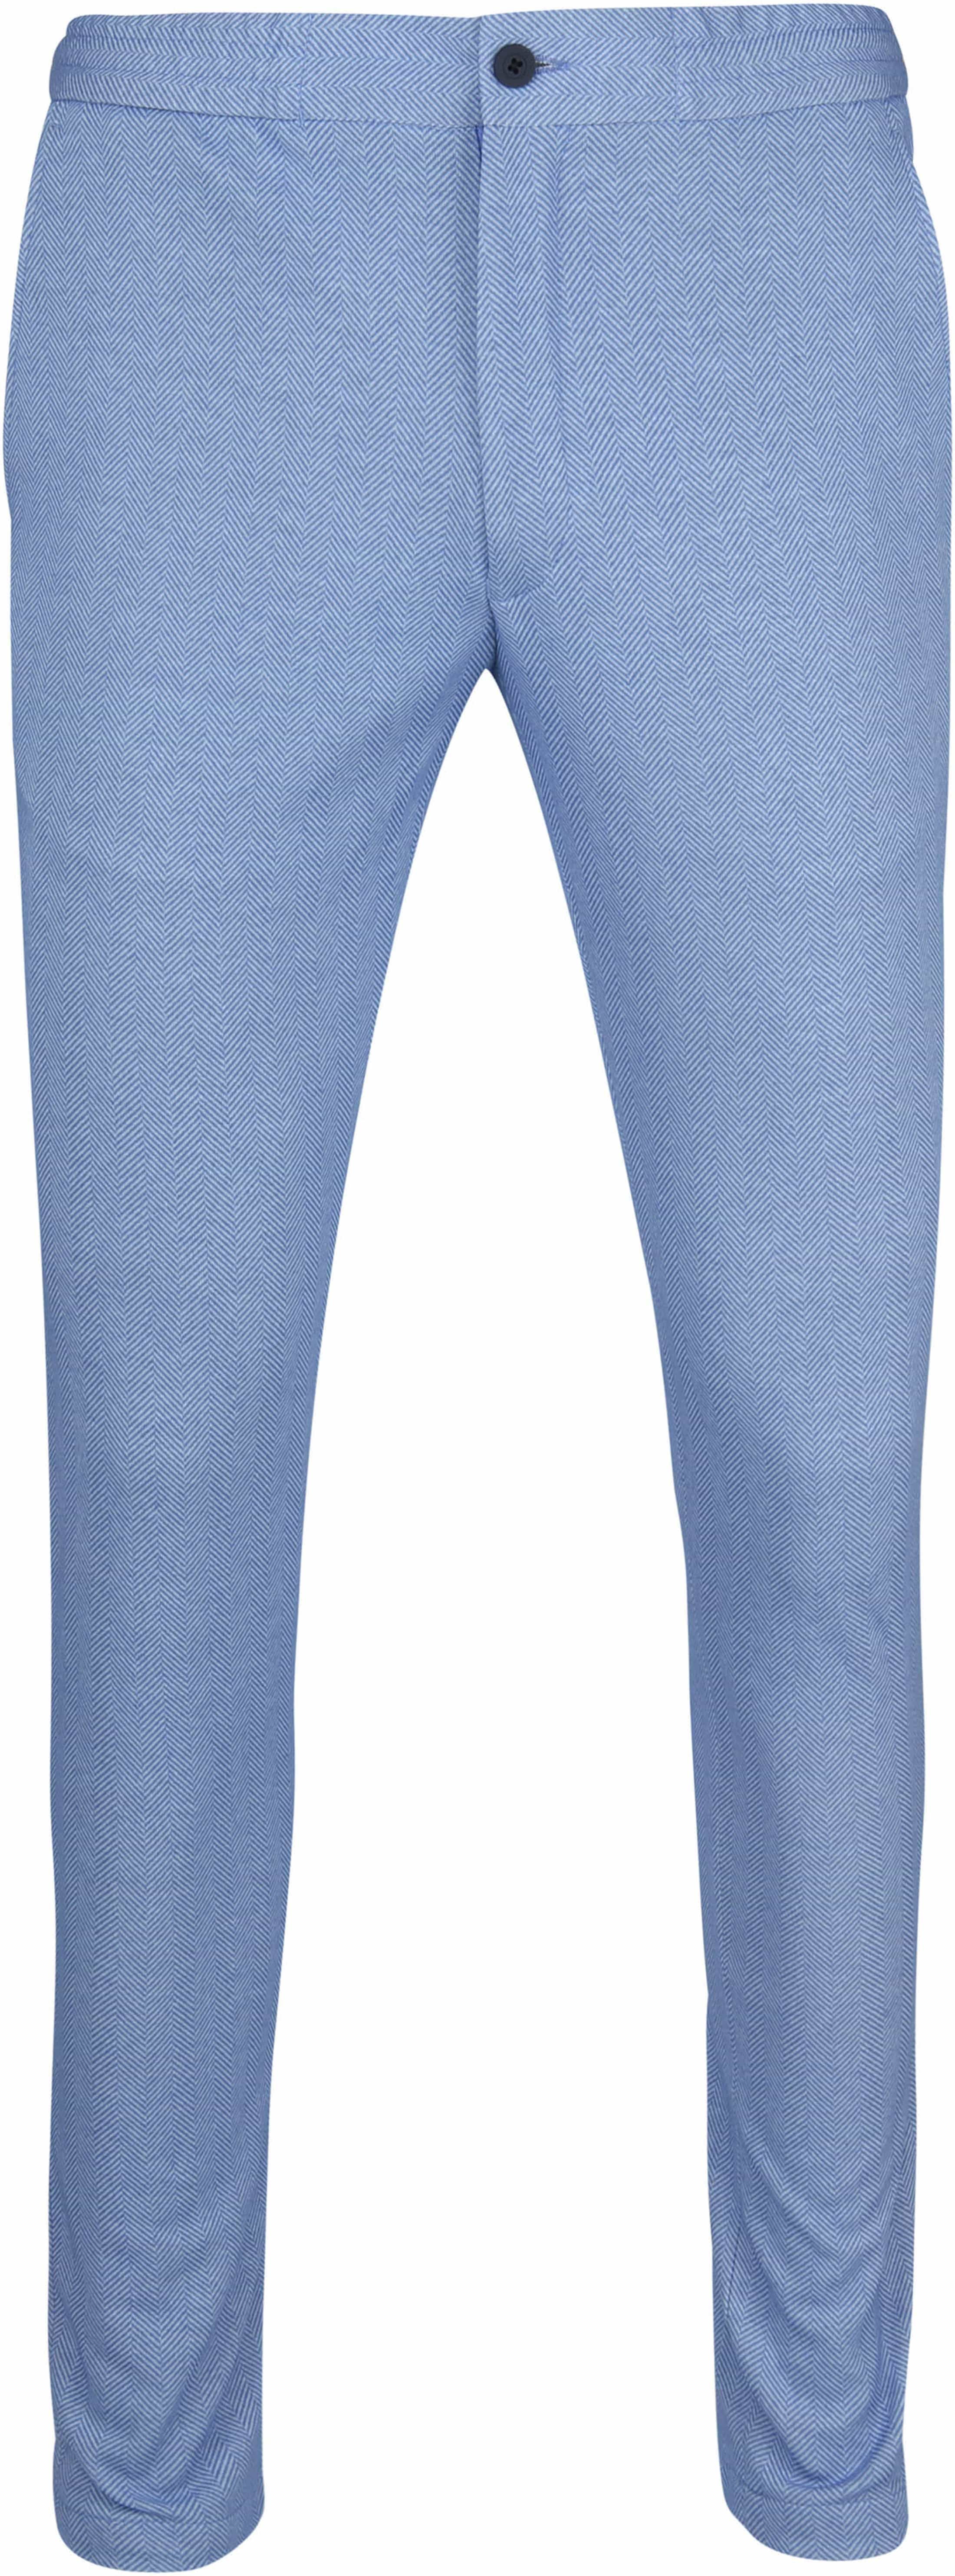 Suitable Jog Trousers Cocoa Blue size 36-R